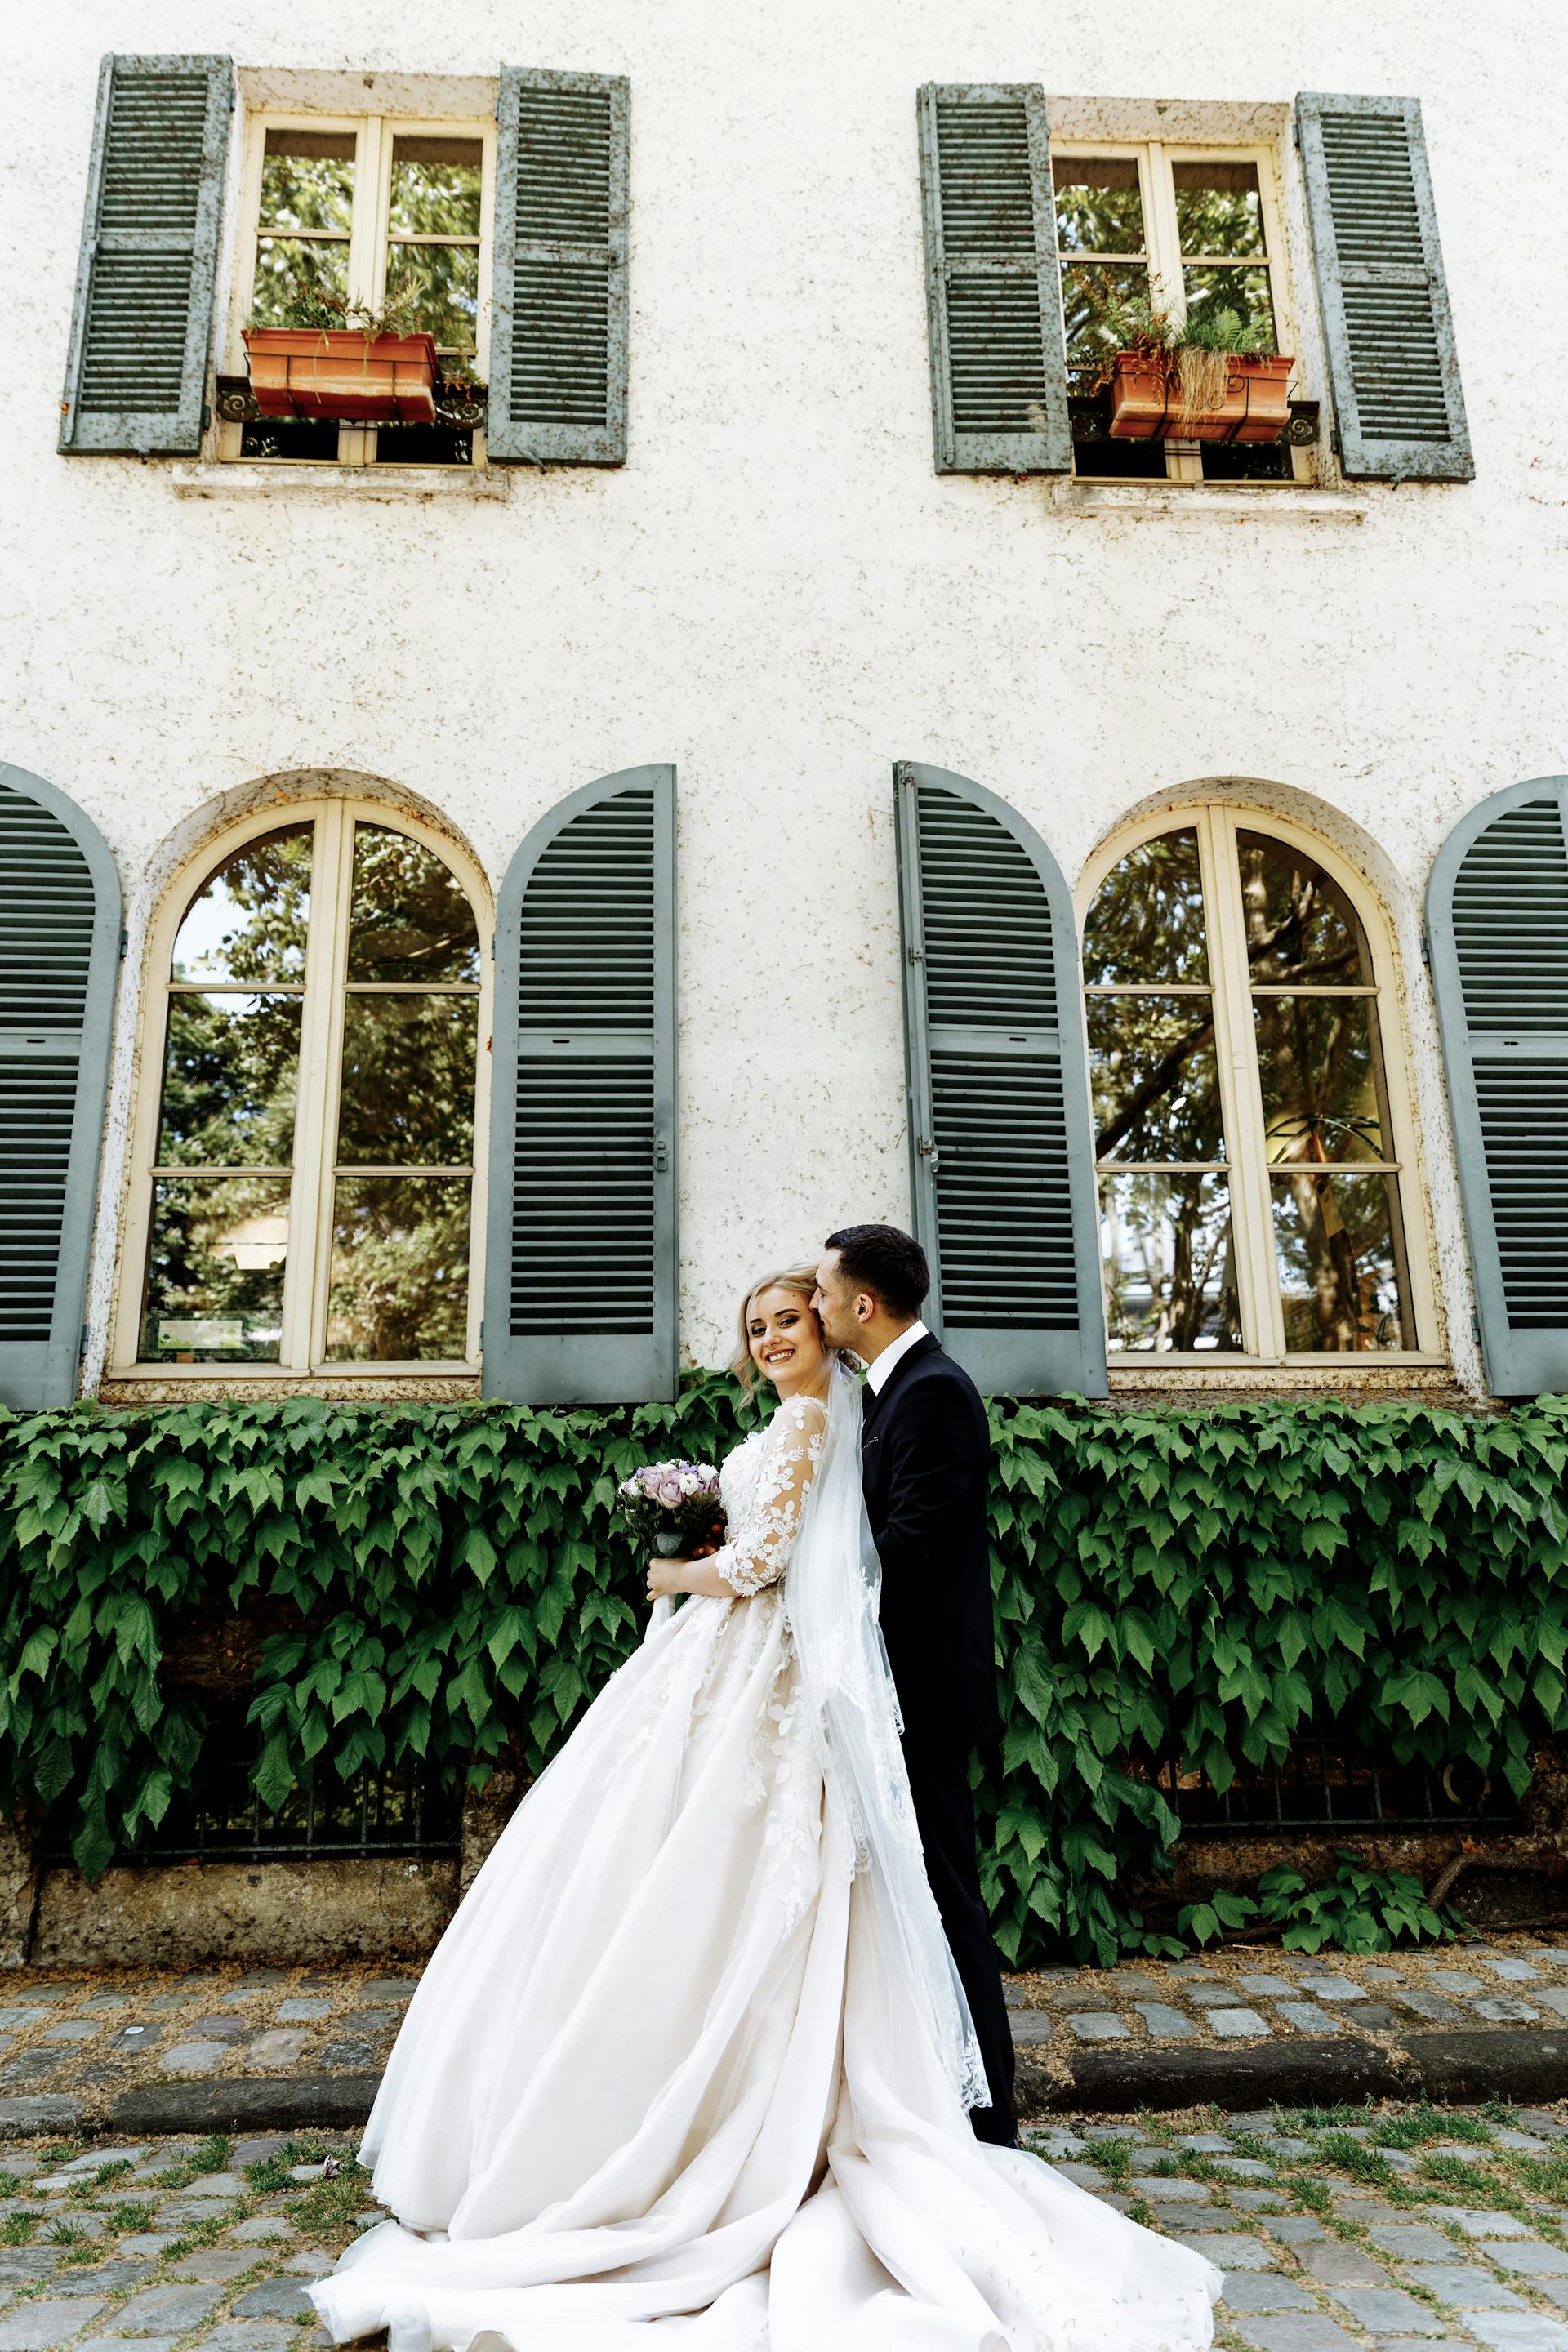 Eine lächelnde Braut und ein lächelnder Bräutigam | Quelle: Pexels